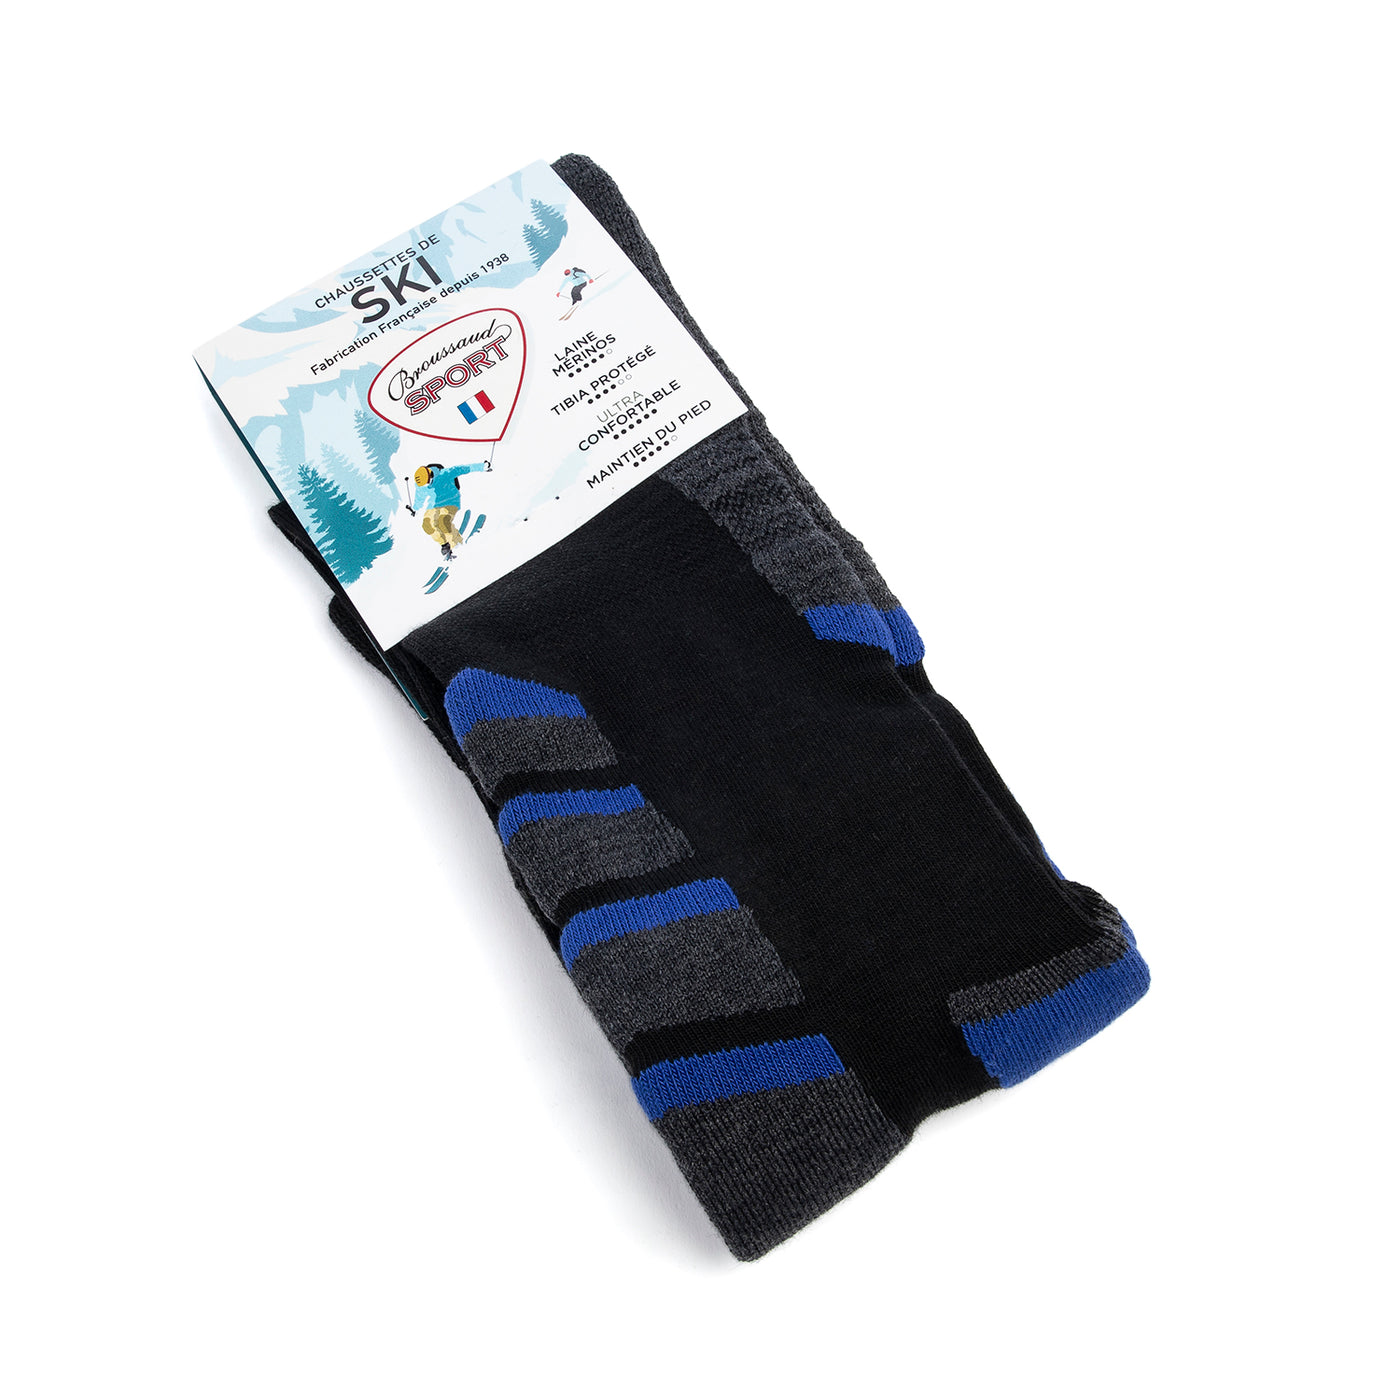 Black-gray-blue ski socks